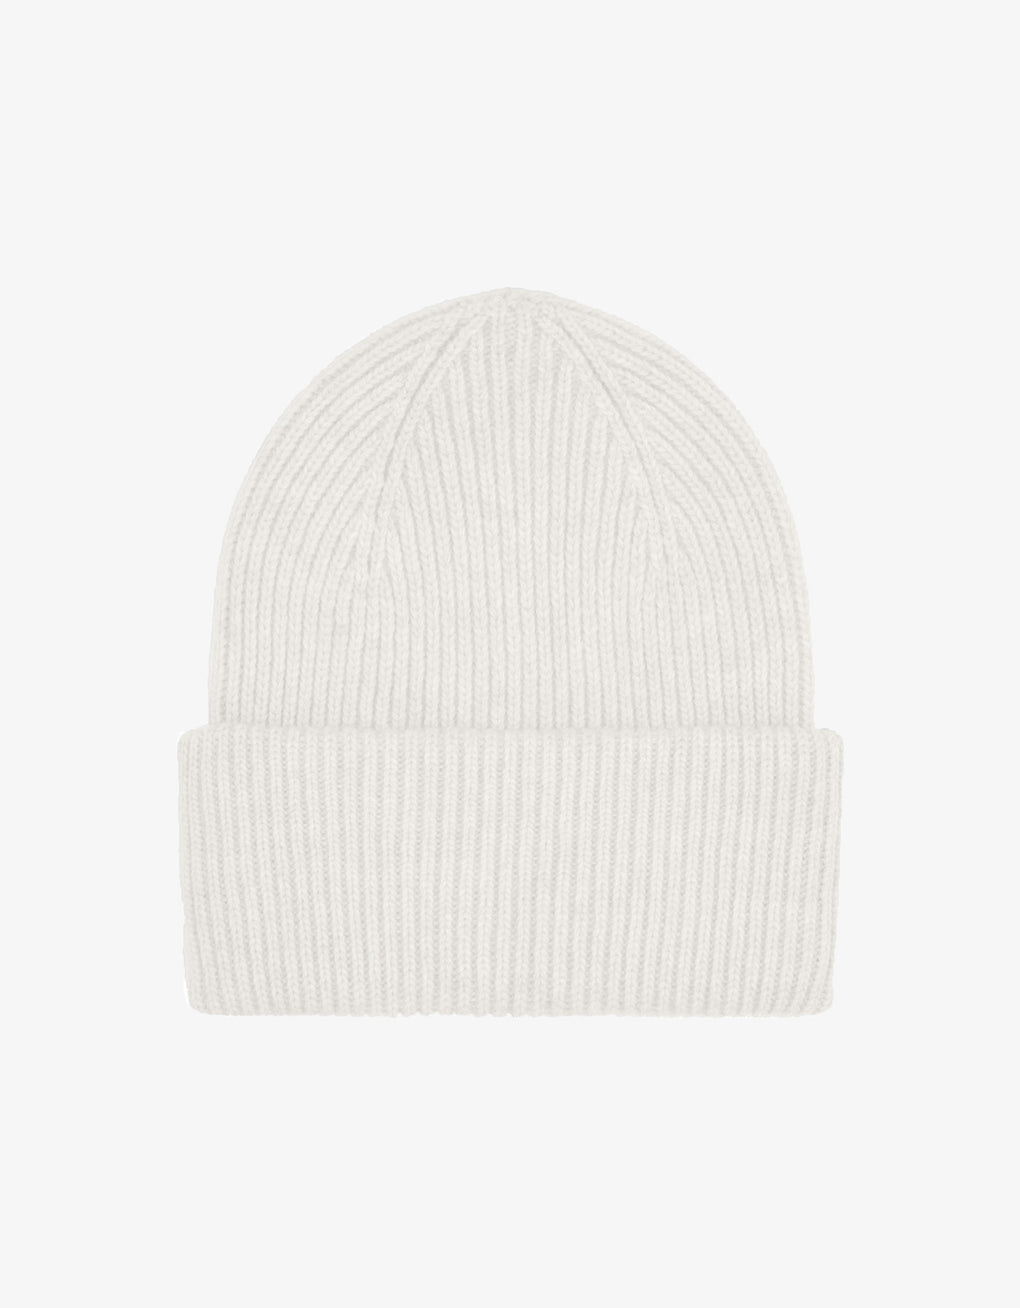 Merino wool hat - optical white